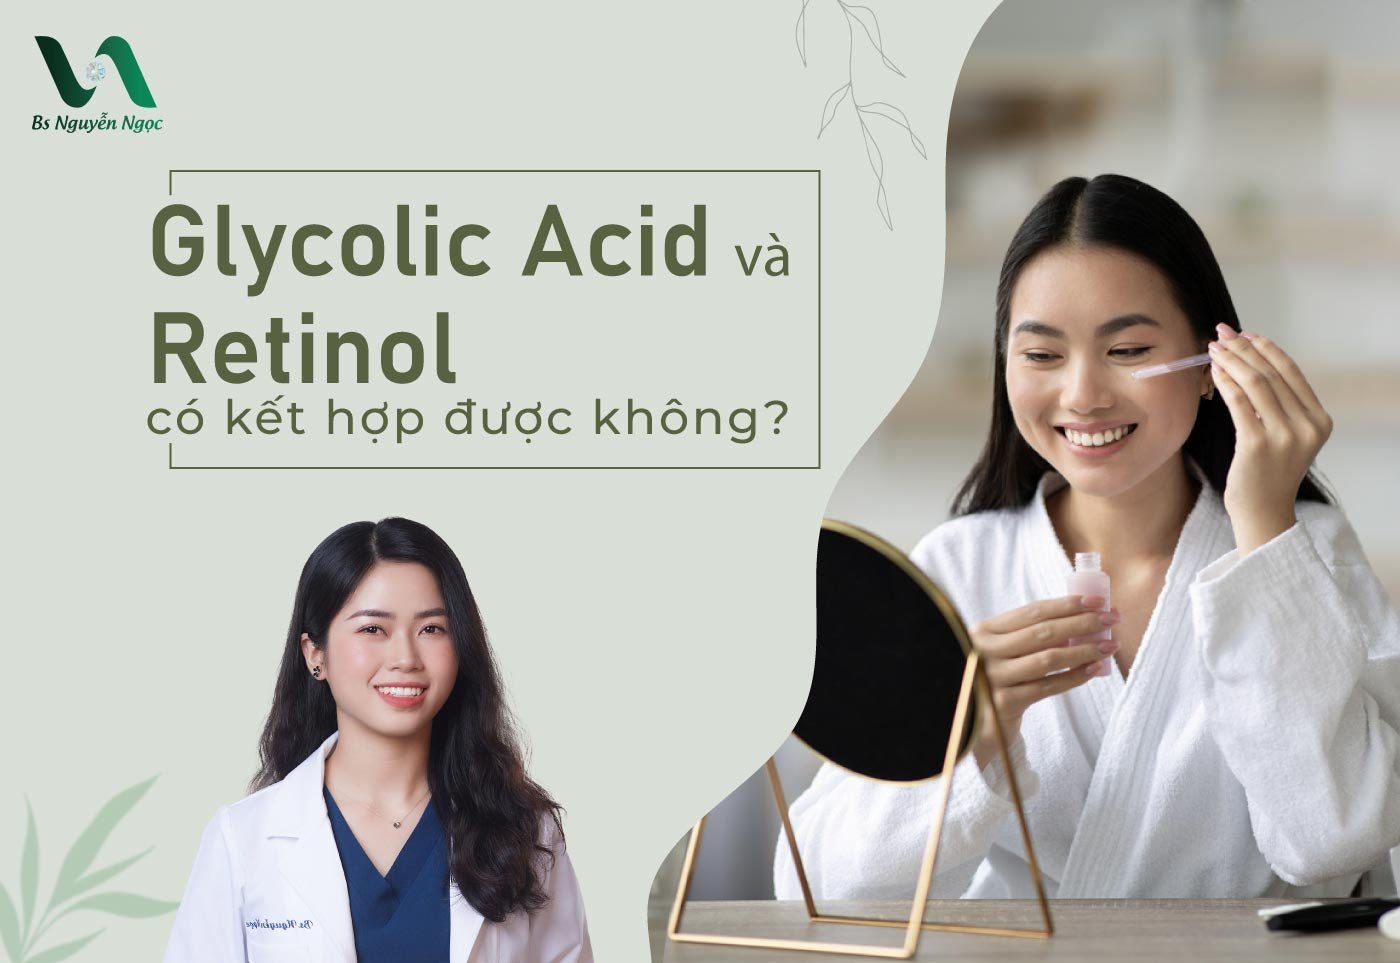 Glycolic Acid và Retinol có kết hợp được không?